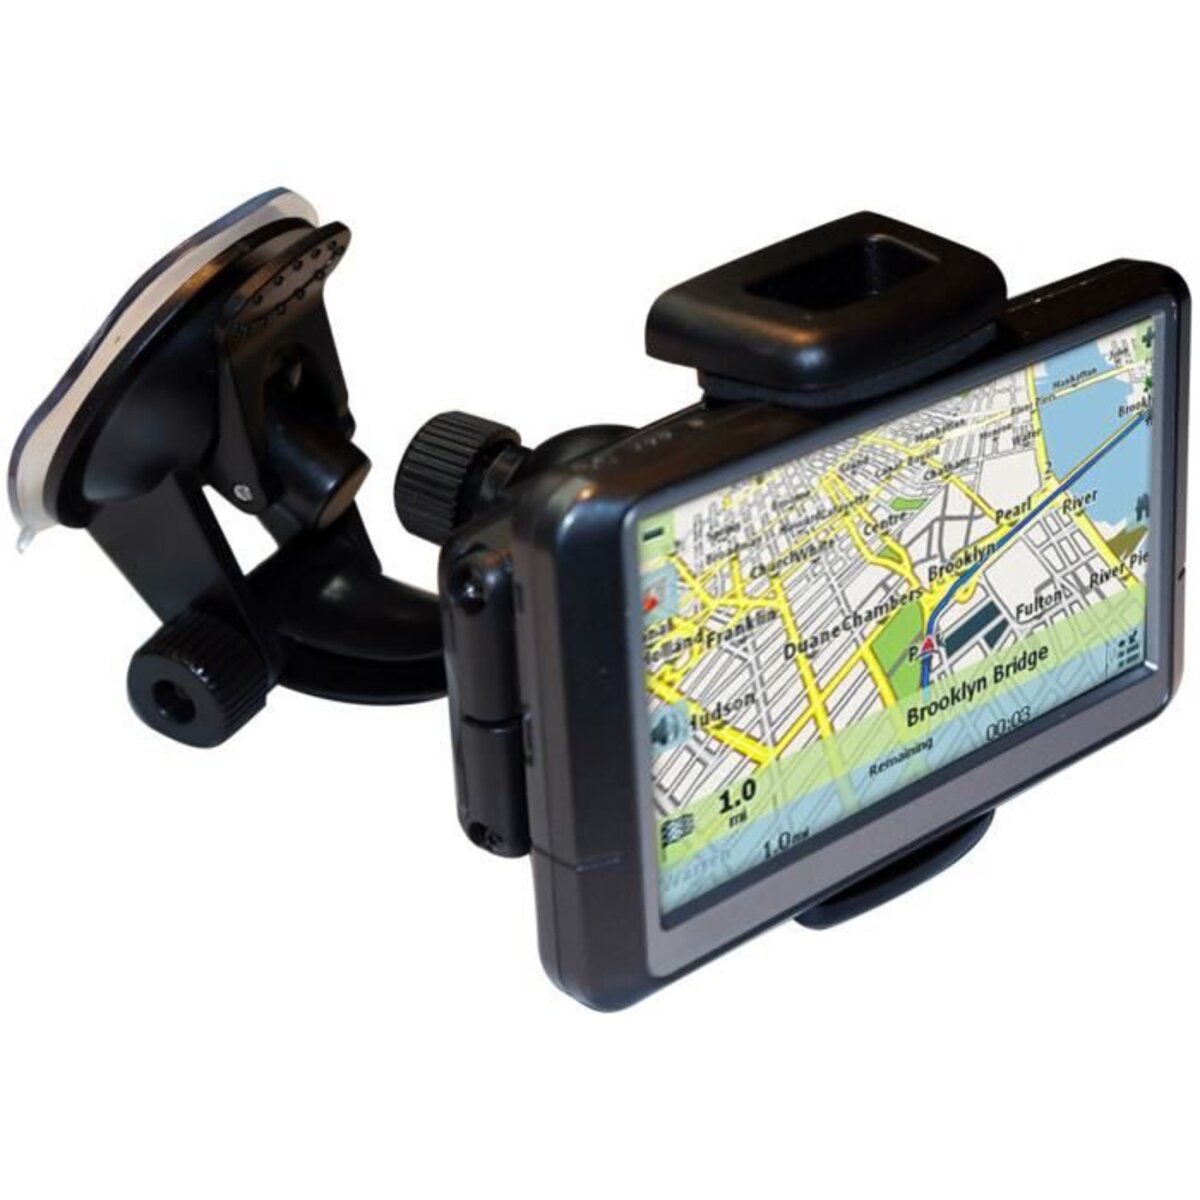 Support téléphone et GPS pour voiture - La Poste